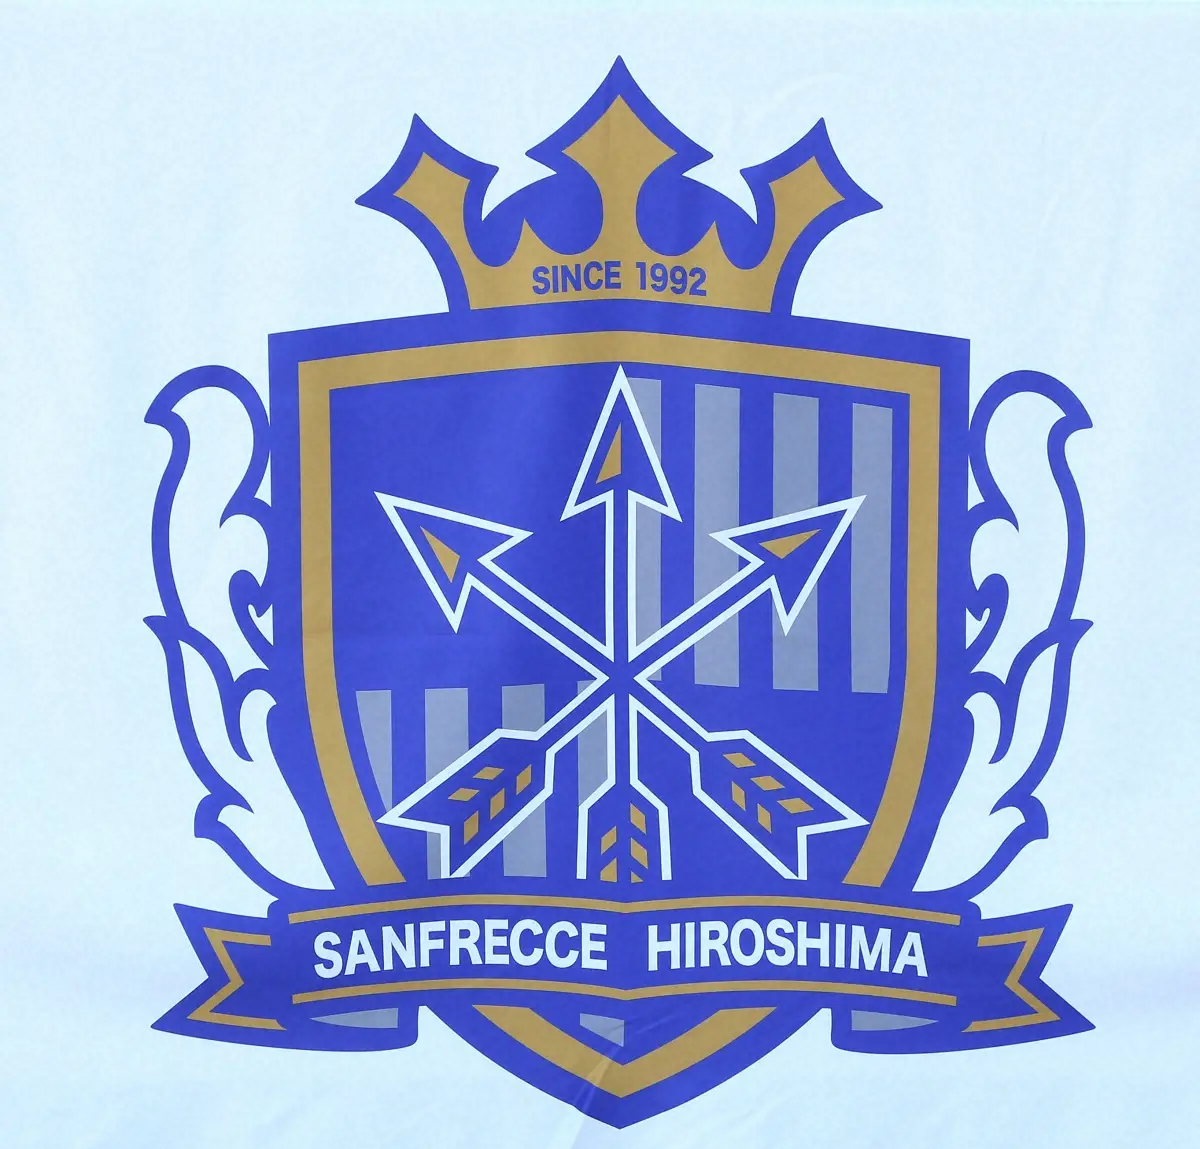 会場に掲示された広島のロゴ